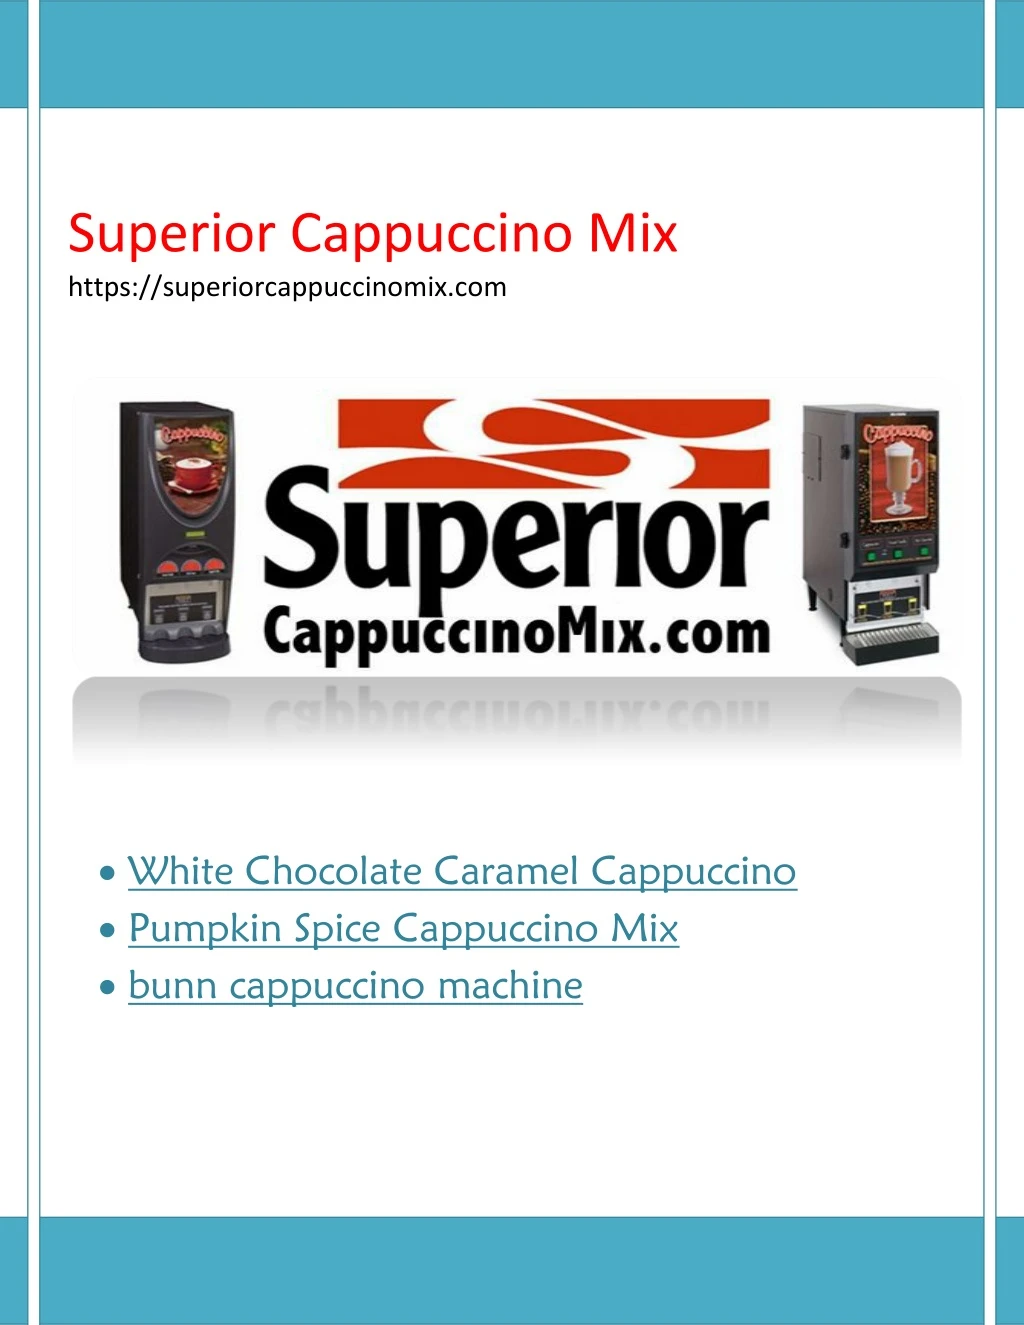 superior cappuccino mix https